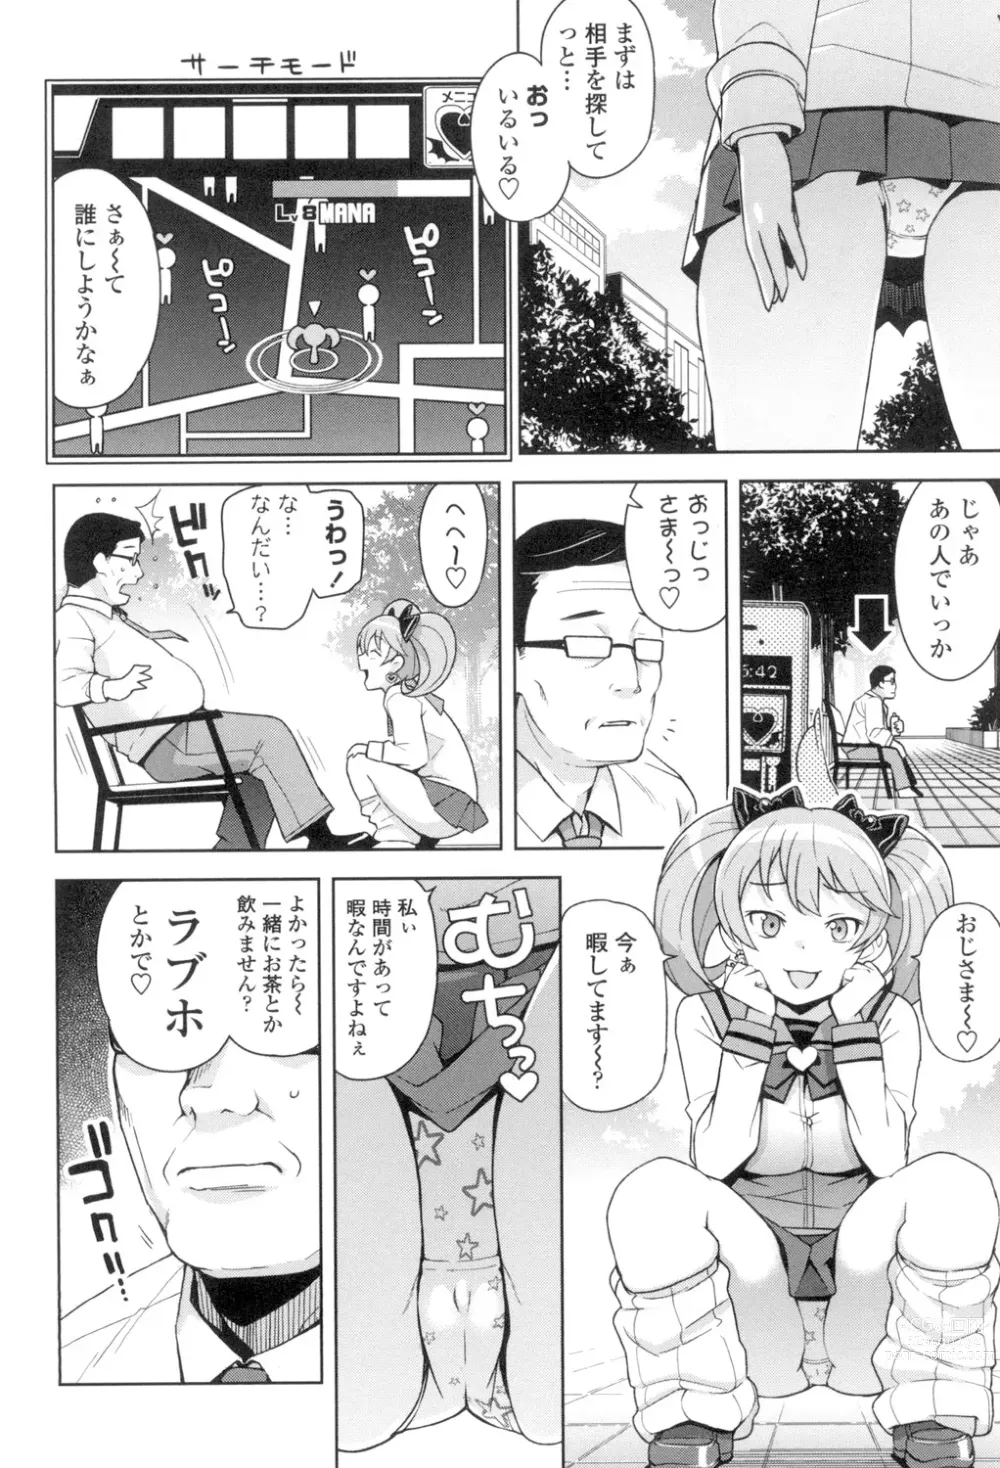 Page 9 of manga Hametomo Collection